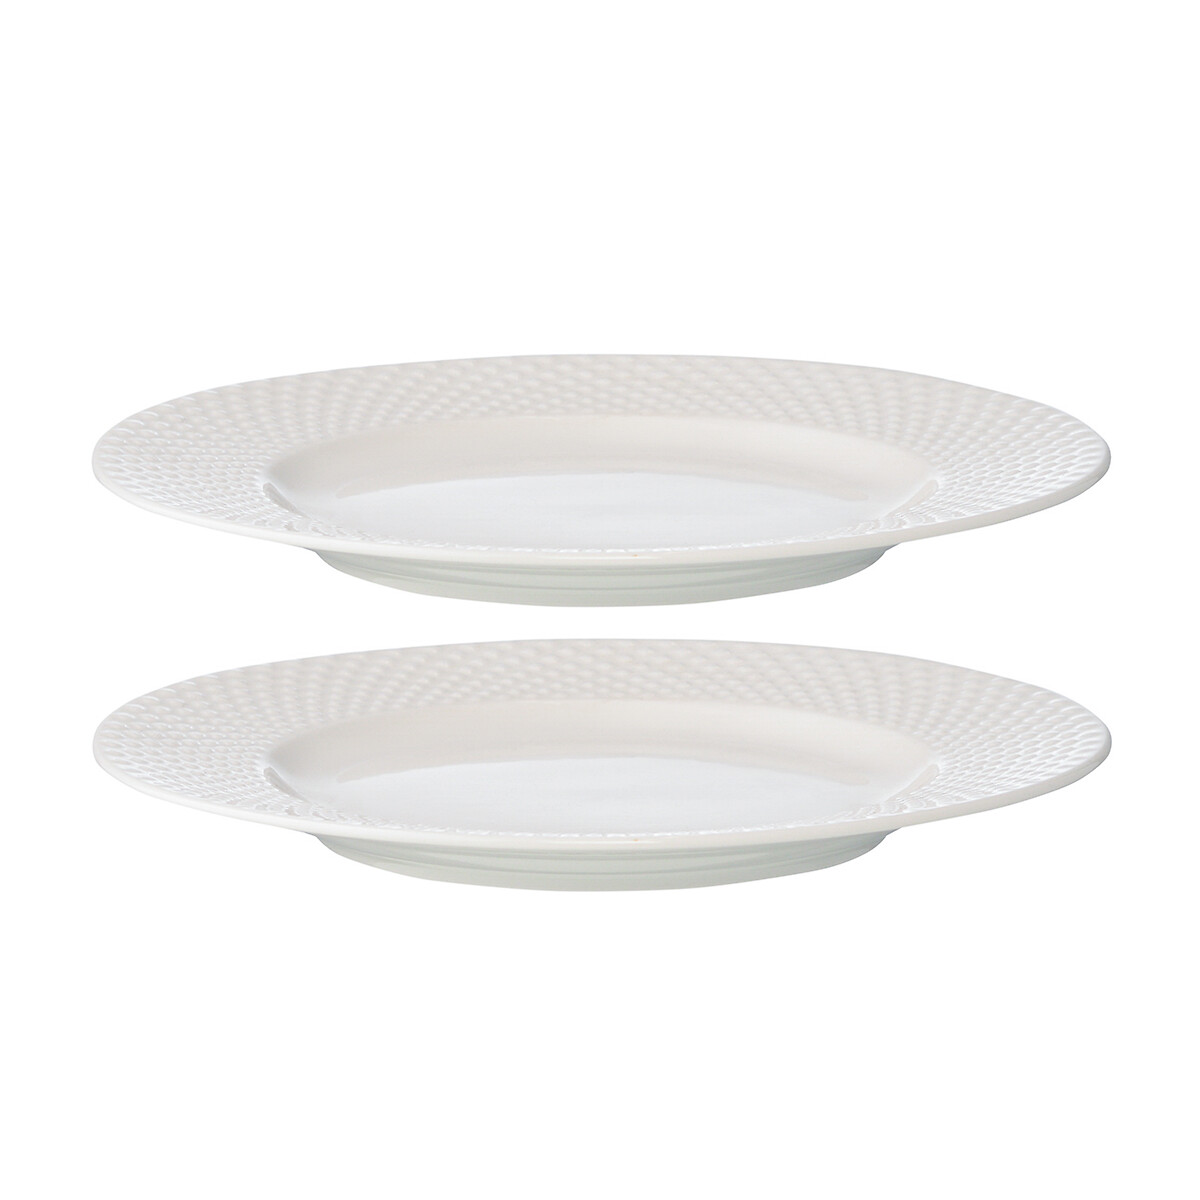 Набор из двух тарелок Essential единый размер белый набор из двух тарелок essential 27см единый размер белый